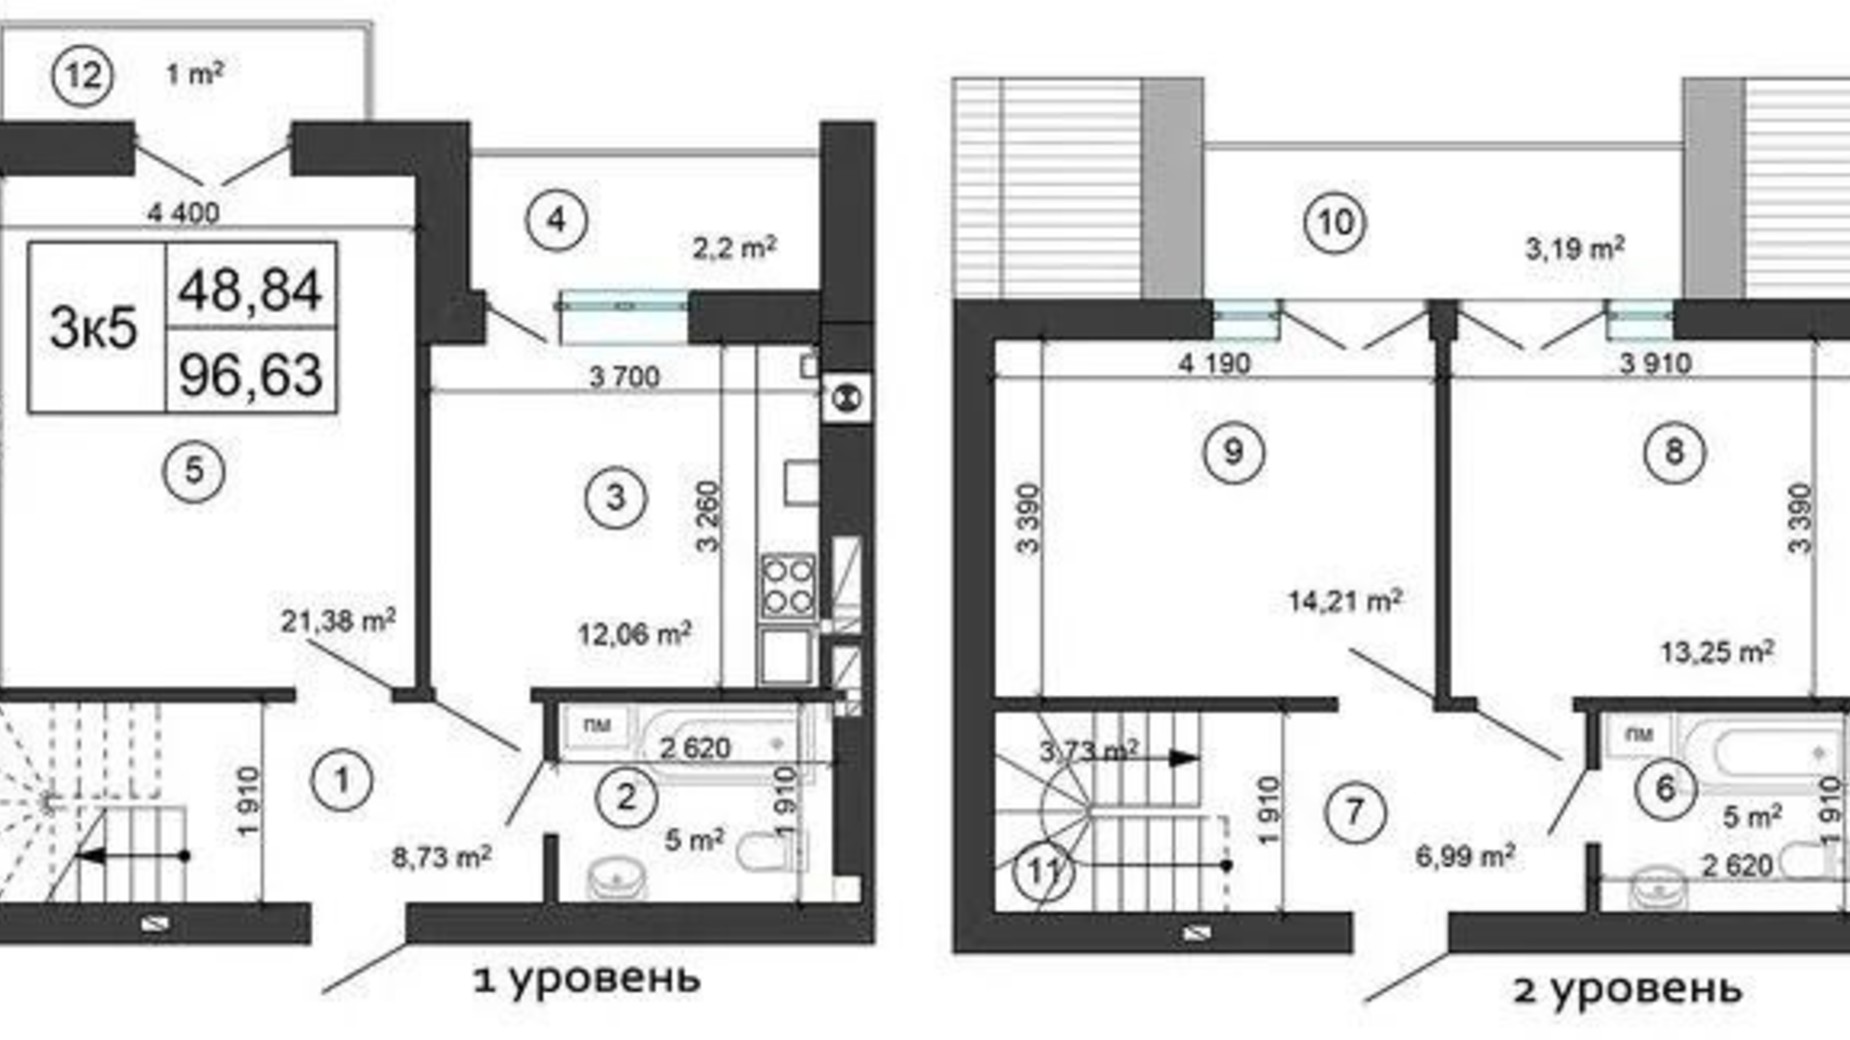 Планировка много­уровневой квартиры в ЖК Сырецкий Парк 99 м², фото 602015